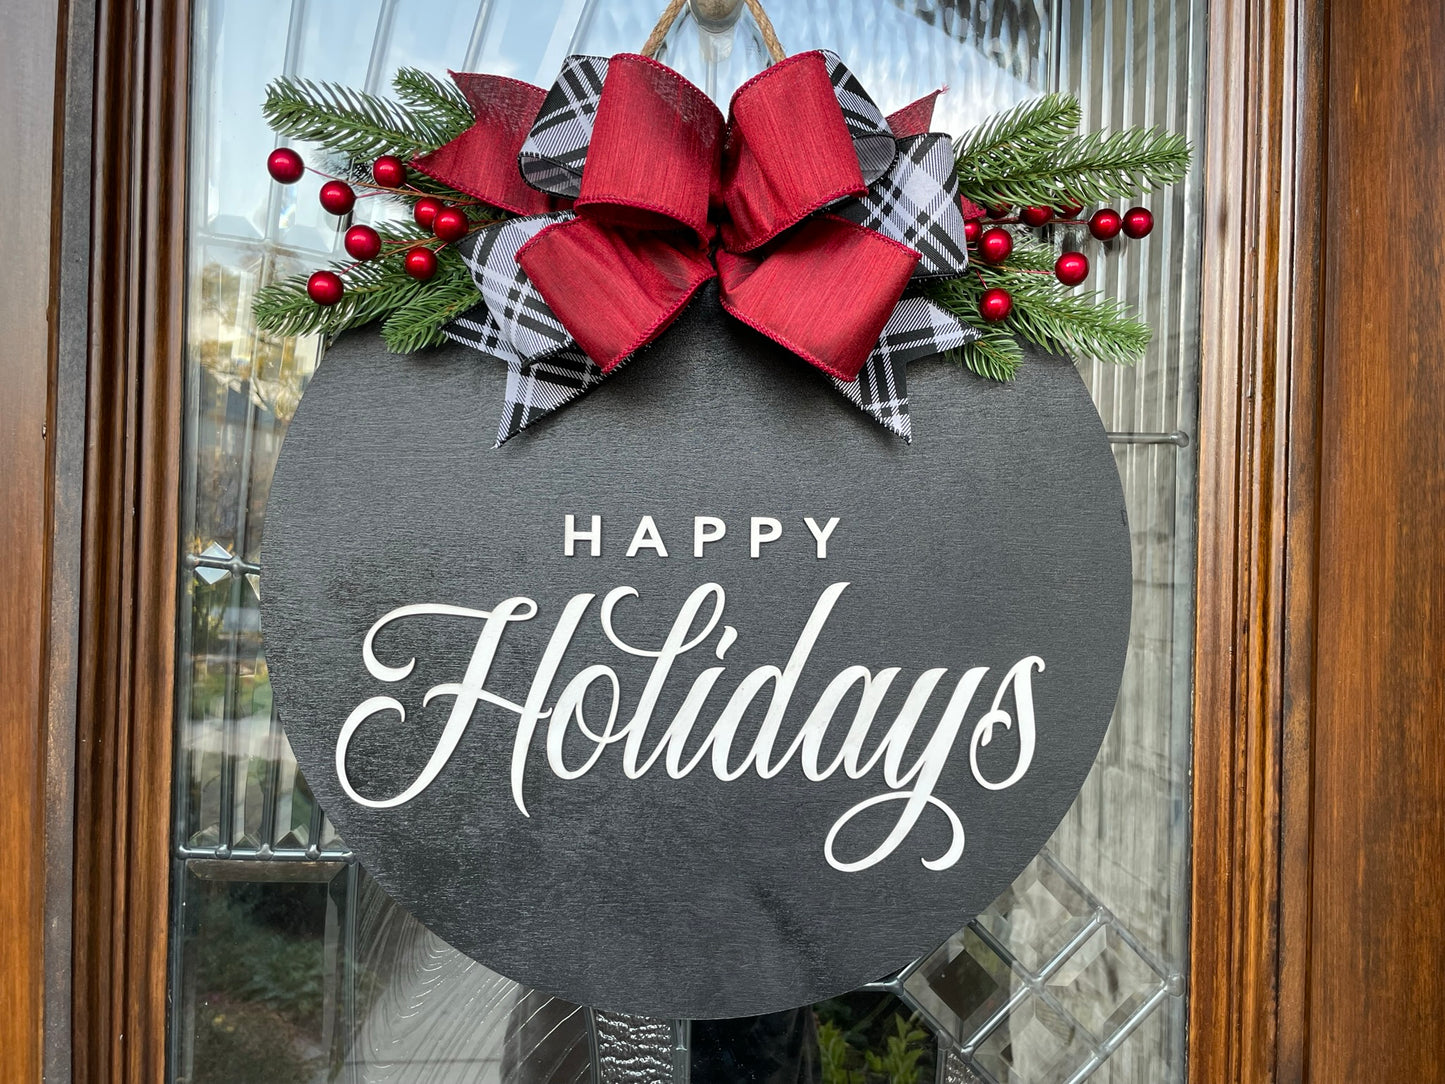 Happy Holidays Door Sign